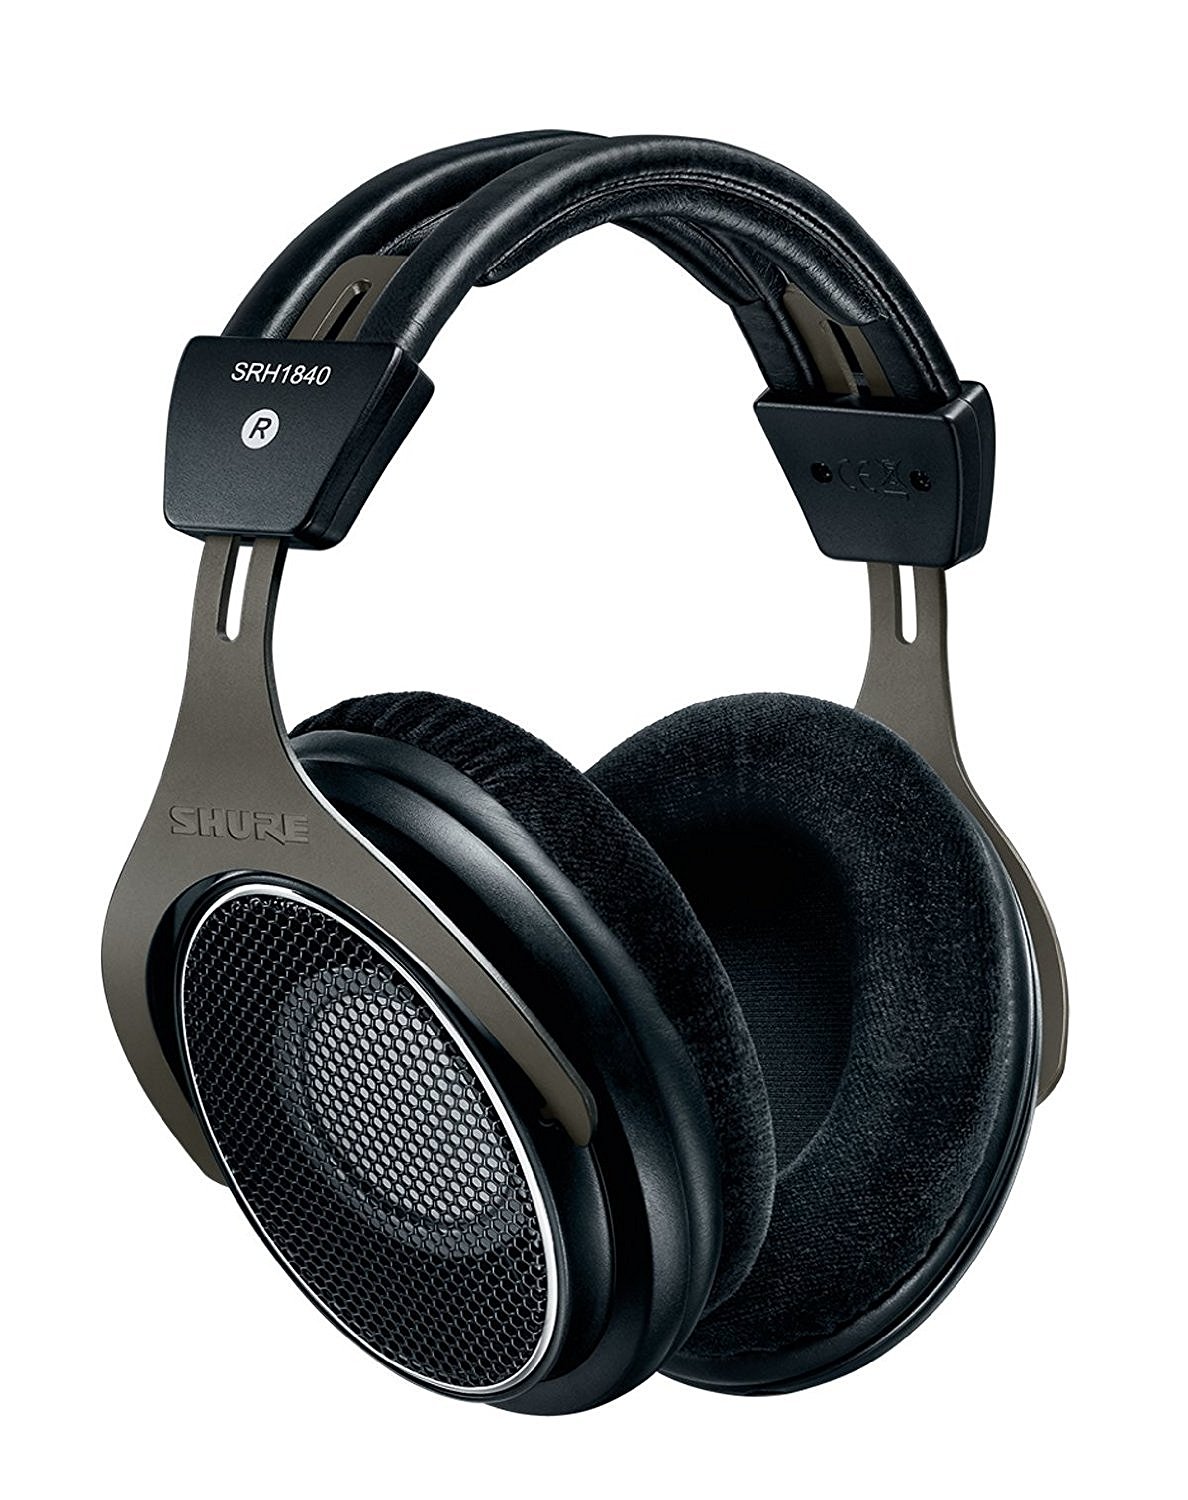 Best Headphones For Mastering Music: Shure SRH 1840